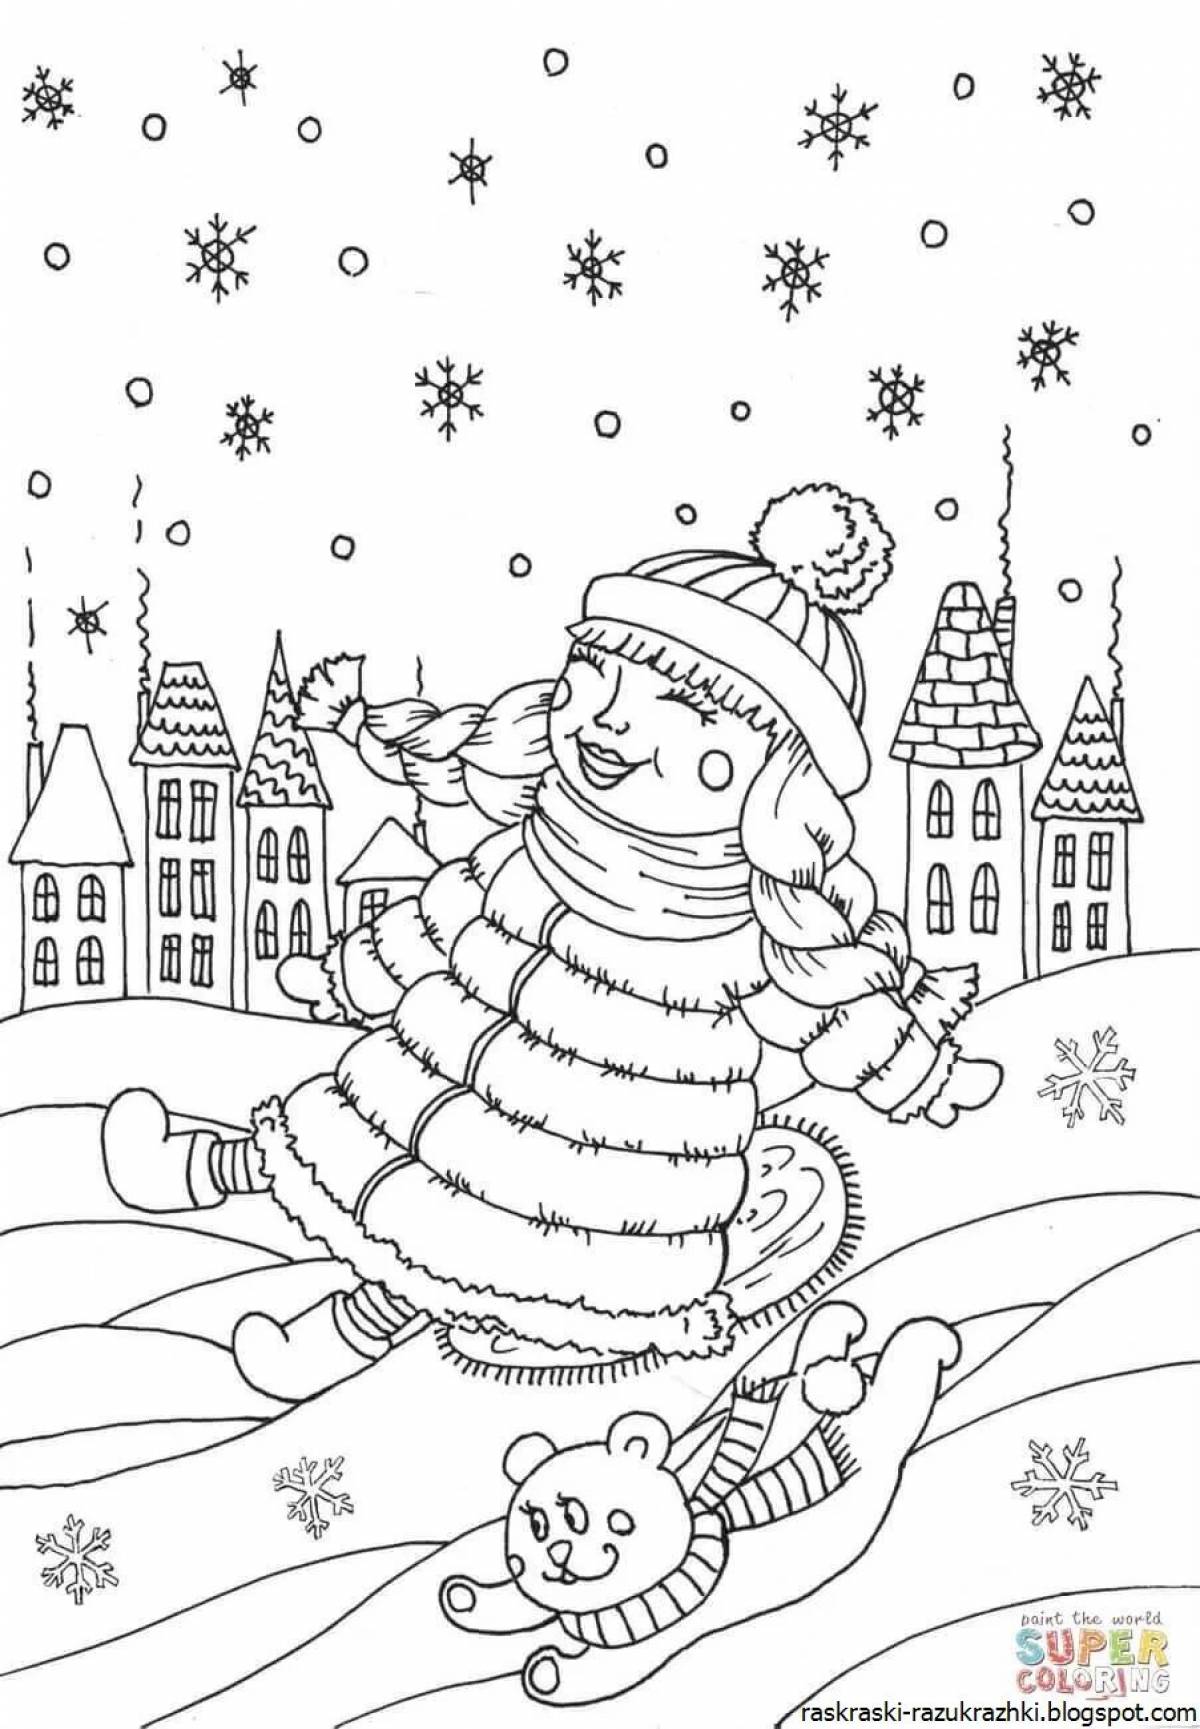 Веселая зимняя раскраска зимушка для детей 6-7 лет